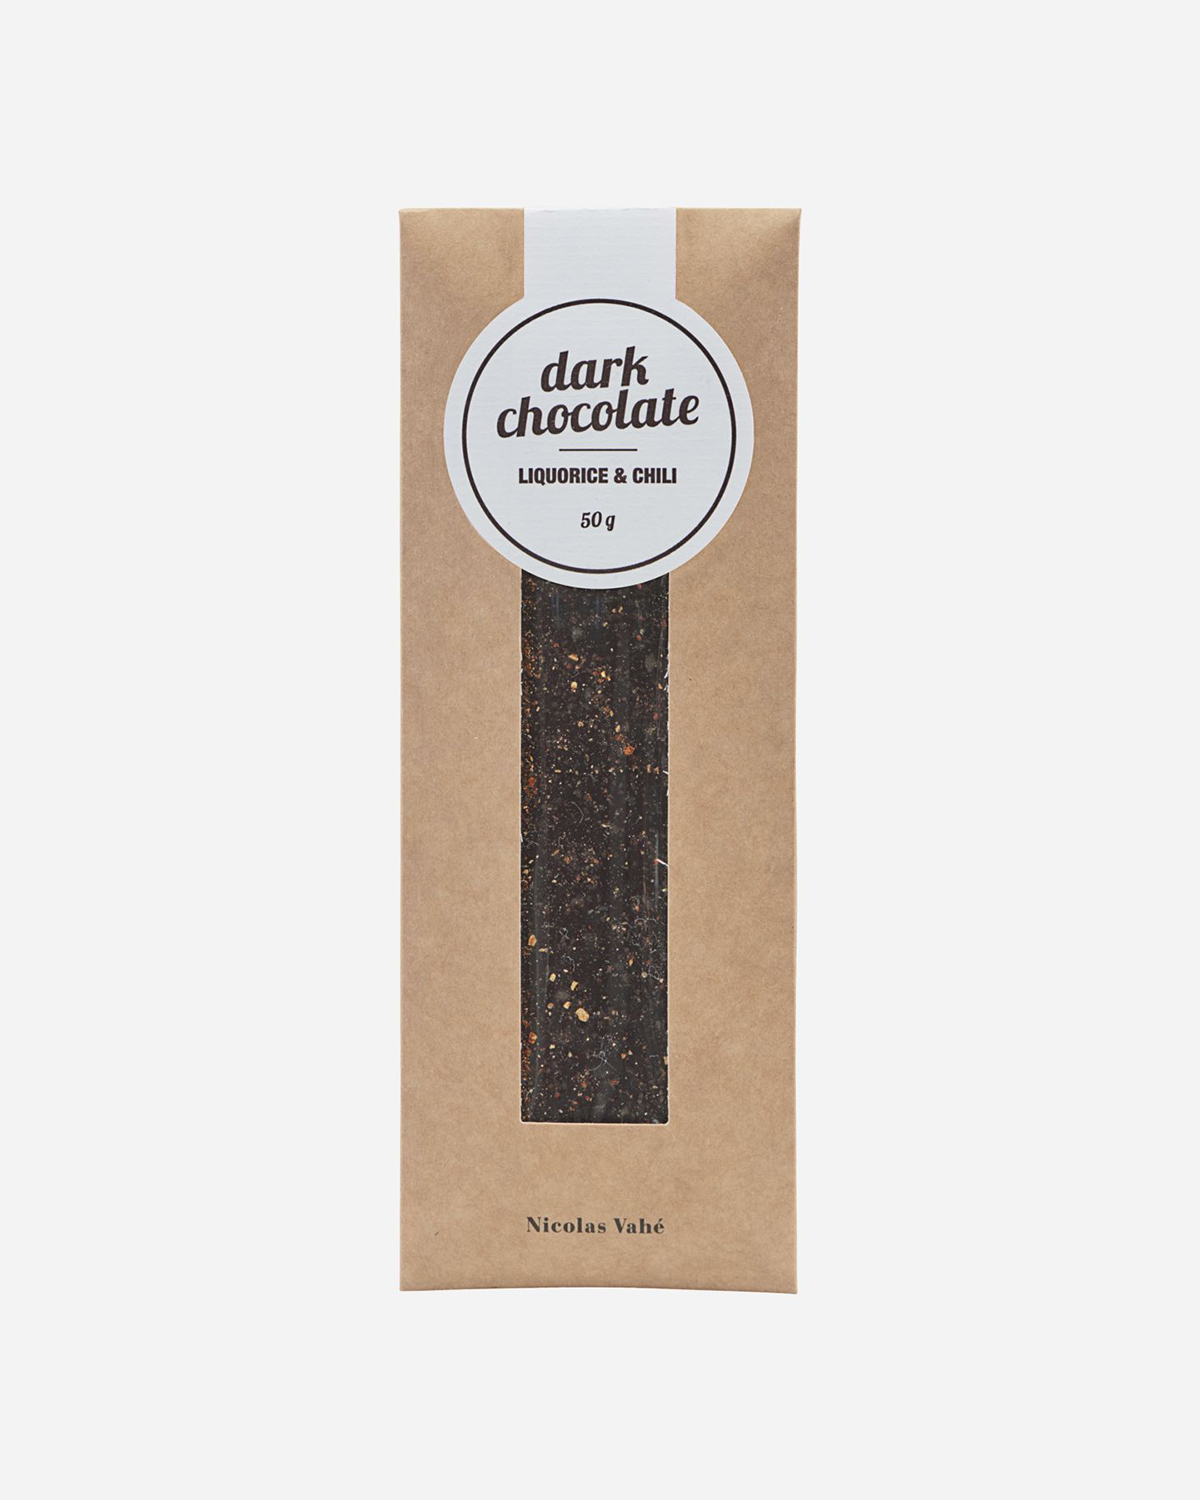 Dark Chocolate - Licorice & Chili, 50 g.